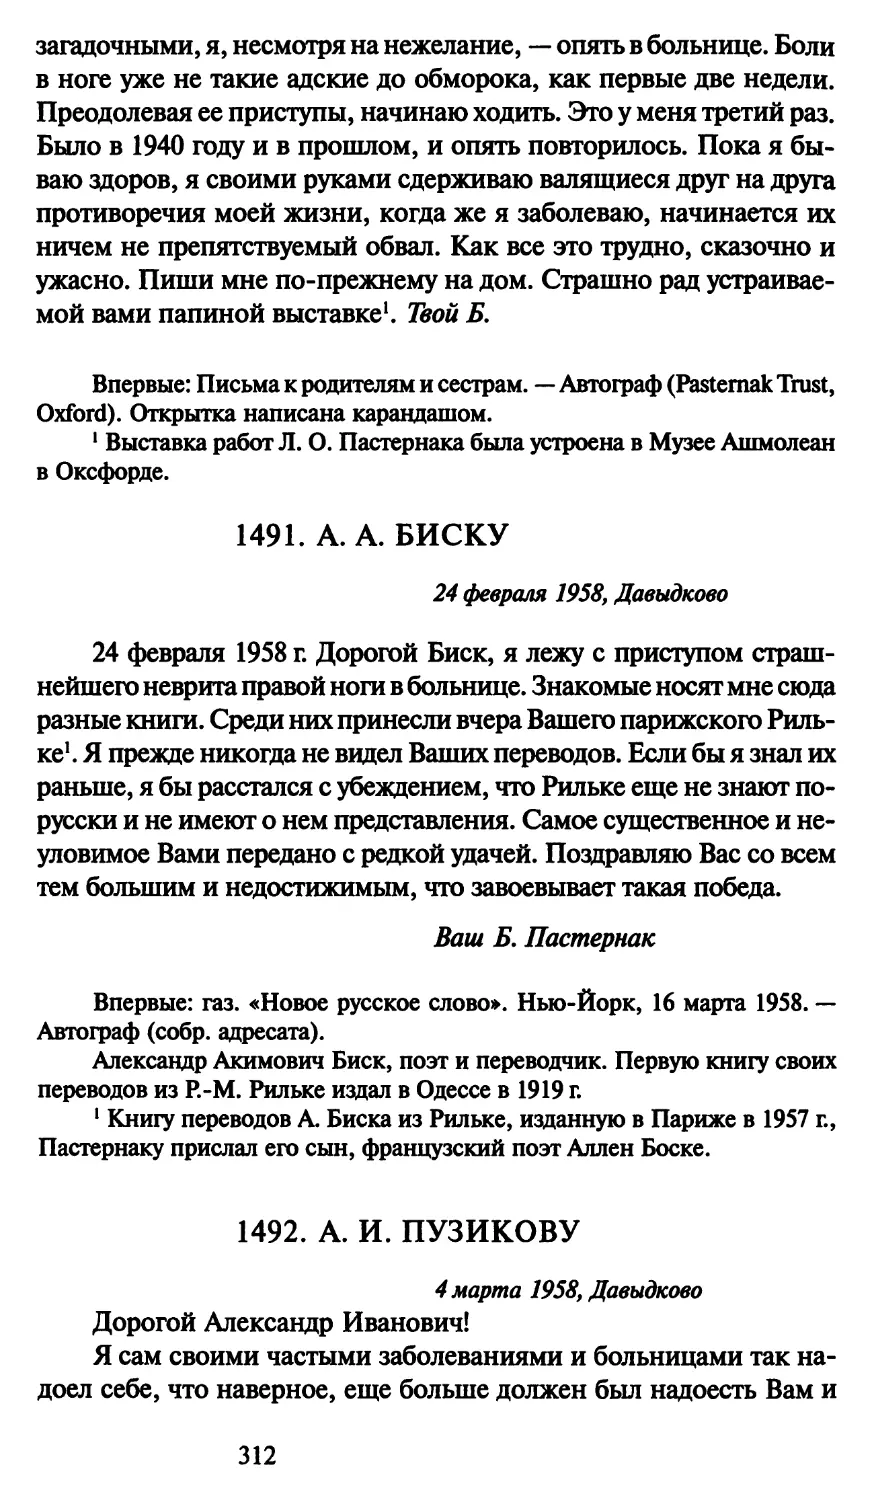 1491. А. А. Биску 24 февраля 1958
1492. А. И. Пузикову 4 марта 1958